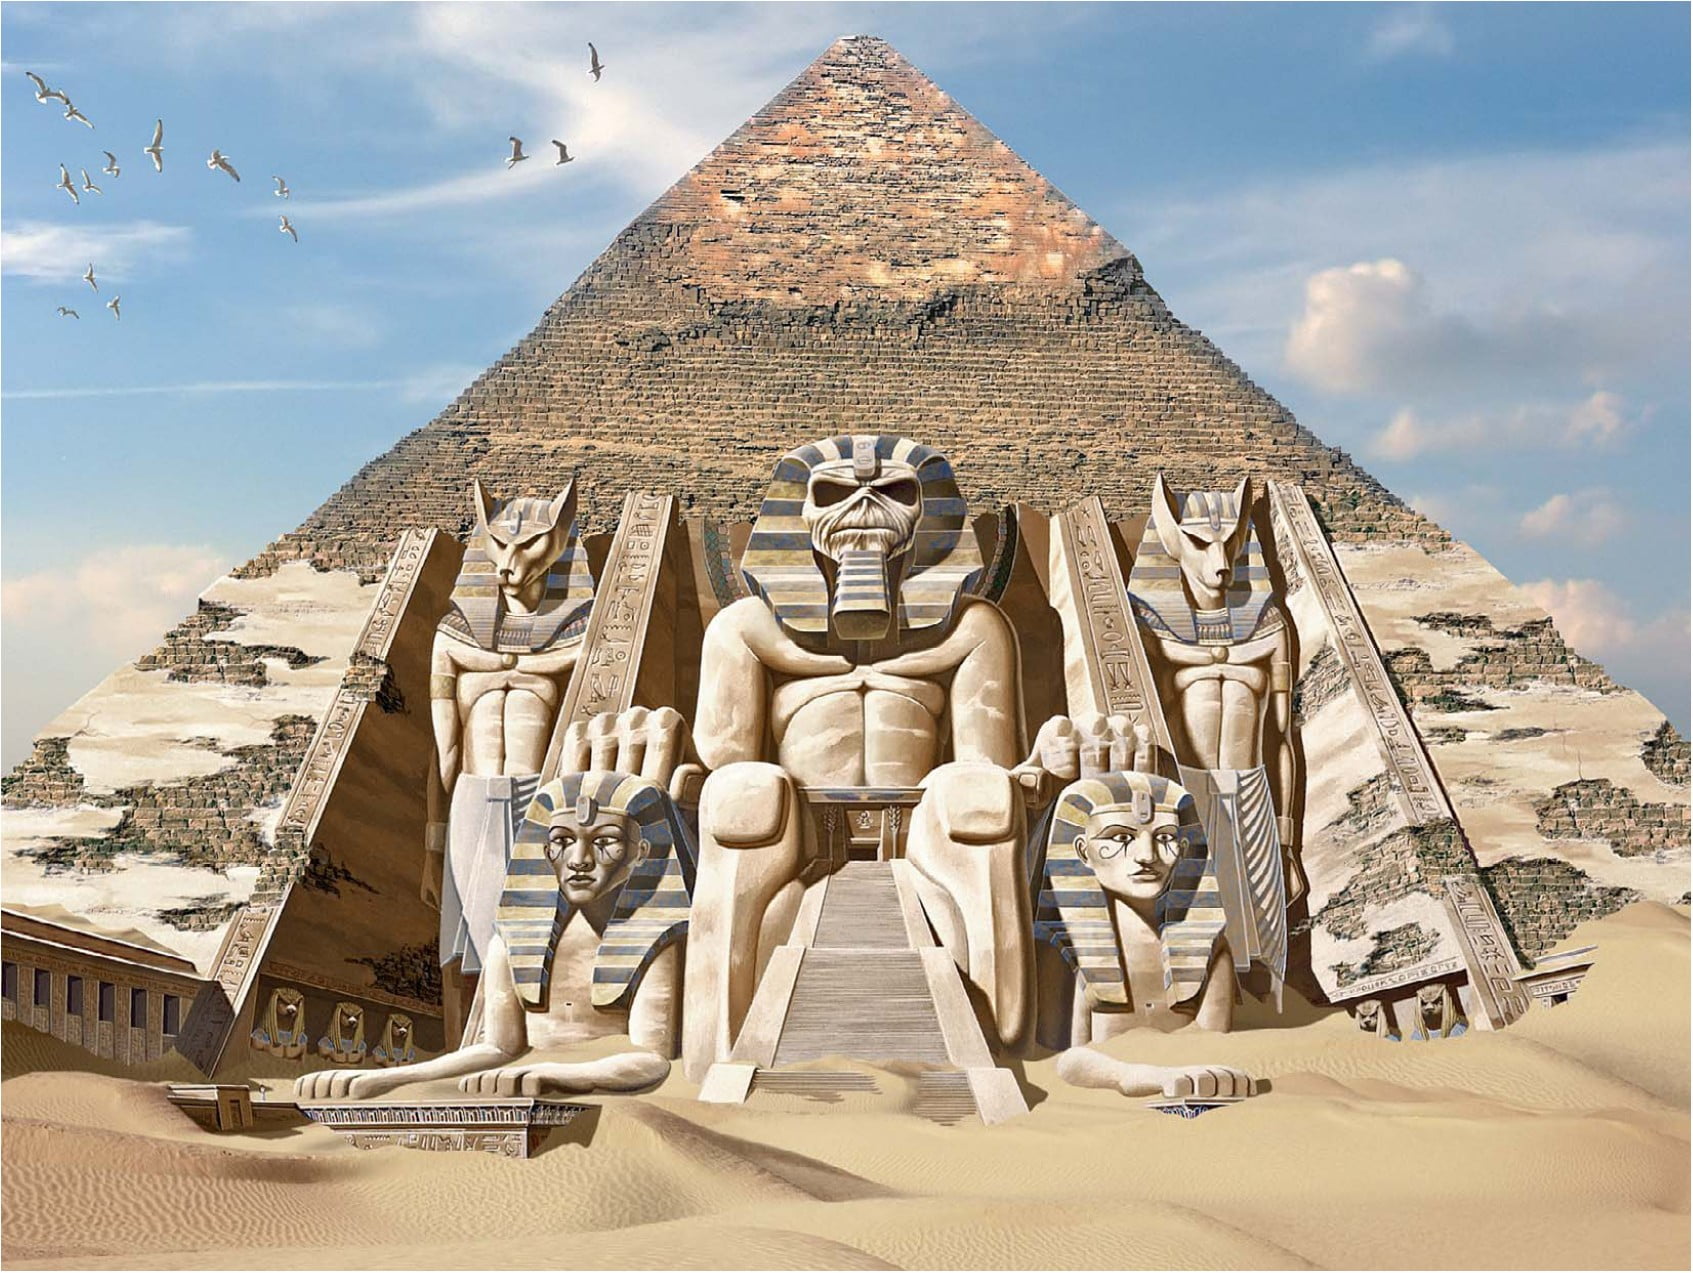 Pyramid of Giza, Egypt, mythology, gods, Anubis, Iron Maiden